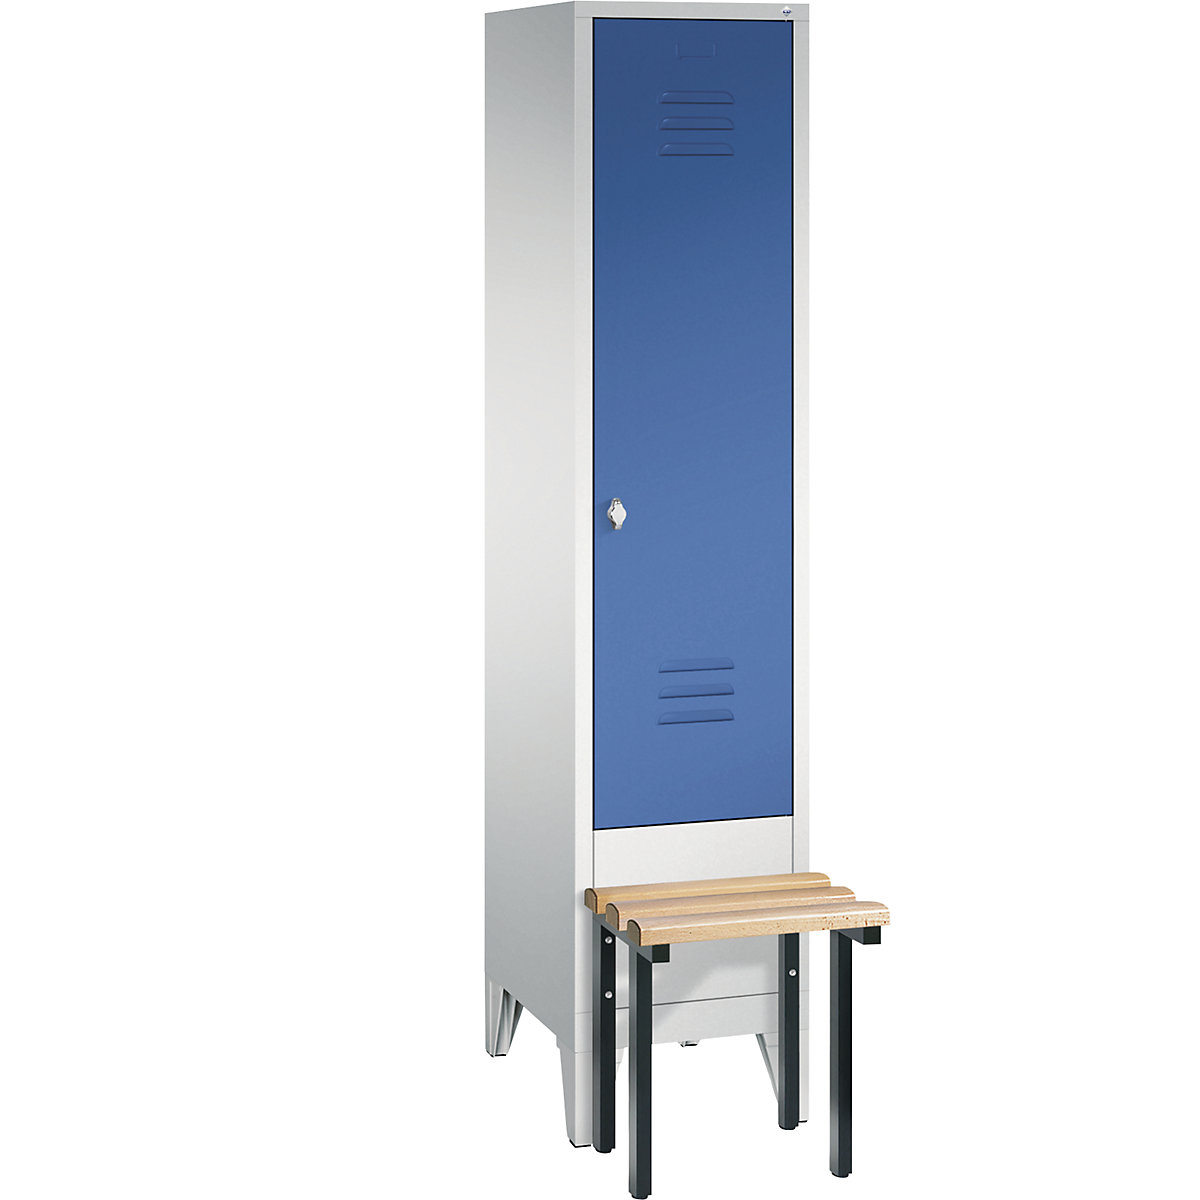 Šatní skříň CLASSIC s předsazenou lavicí – C+P, 1 oddíl, šířka oddílu 400 mm, světlá šedá / enciánová modrá-9